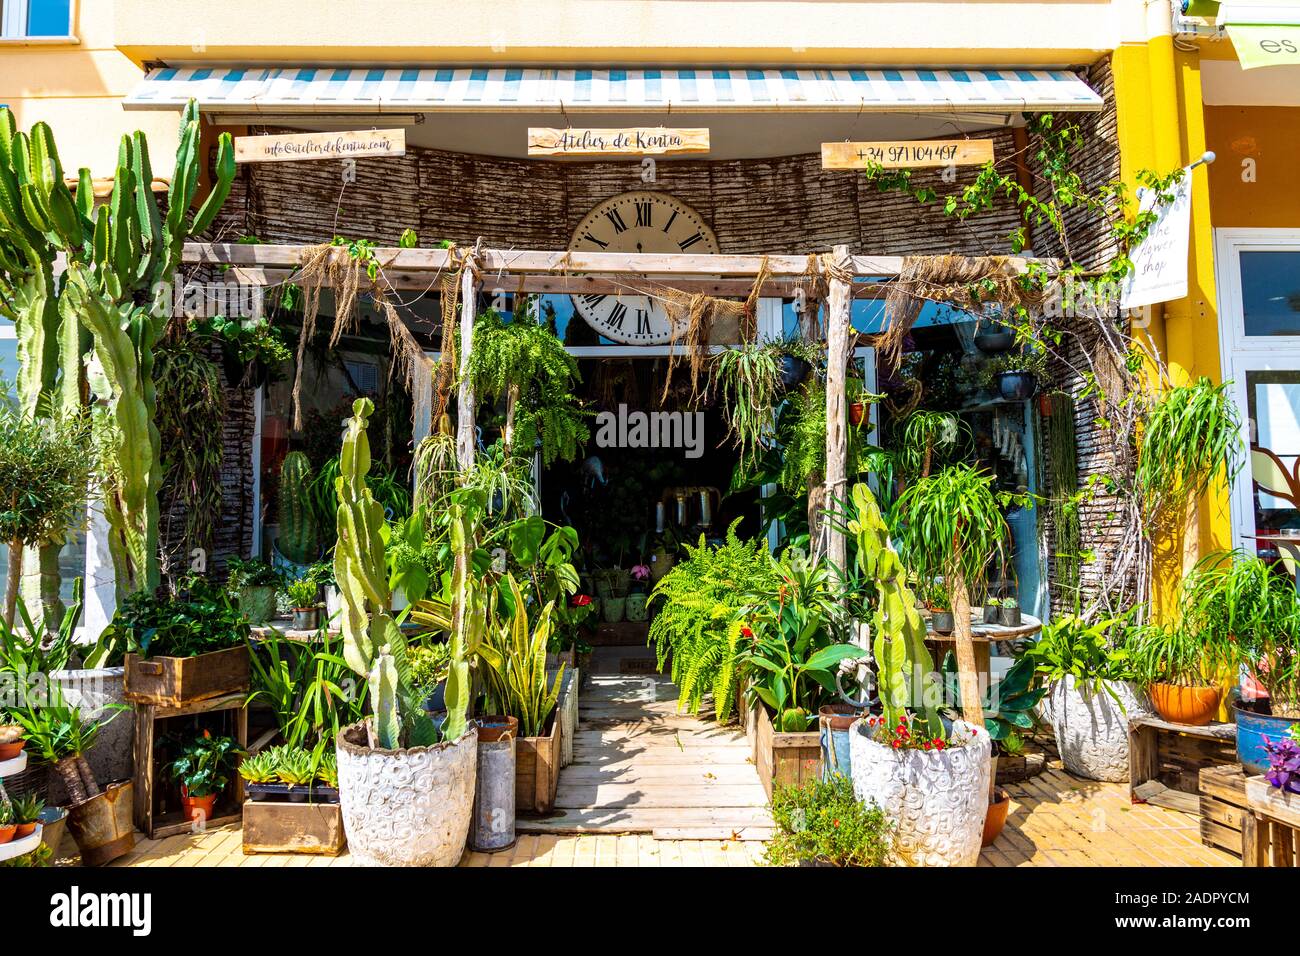 Plant shop Atelier de Kentia in Sant Francesc Xavier, Formentera, Spain Stock Photo